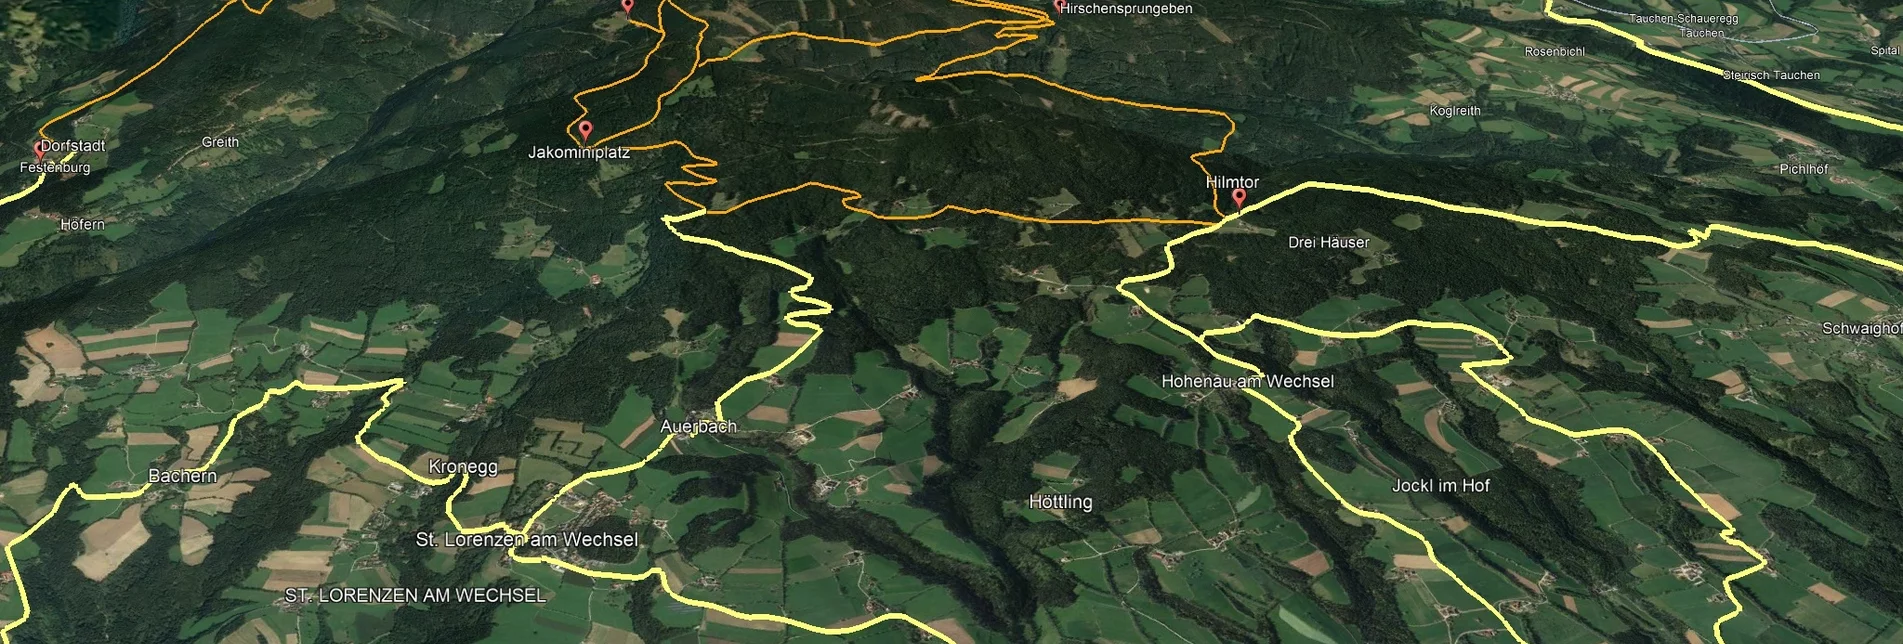 Mountain Biking PREVIEW Styrian Wexl Trails - Glatzl Trahütten Alm Route - Touren-Impression #1 | © Verein Tourismusentwicklung Steirischer Wechsel